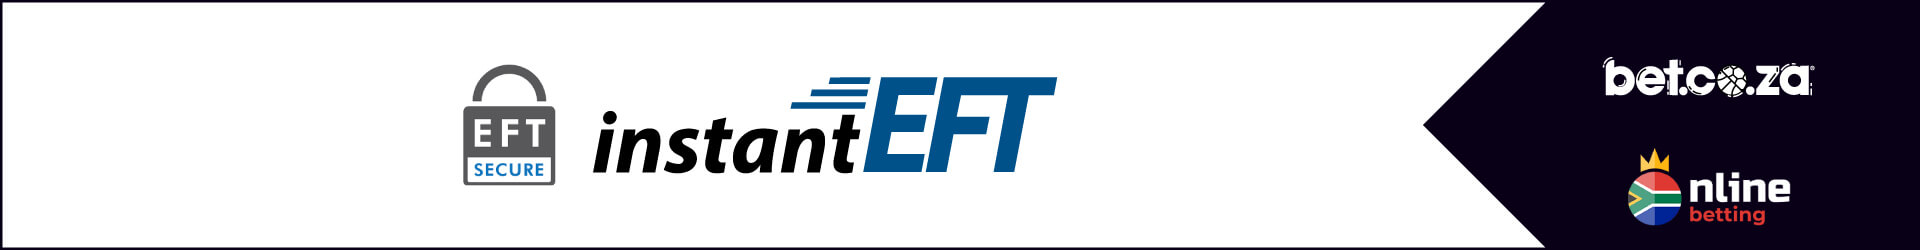 Bet.co.za using SID EFT